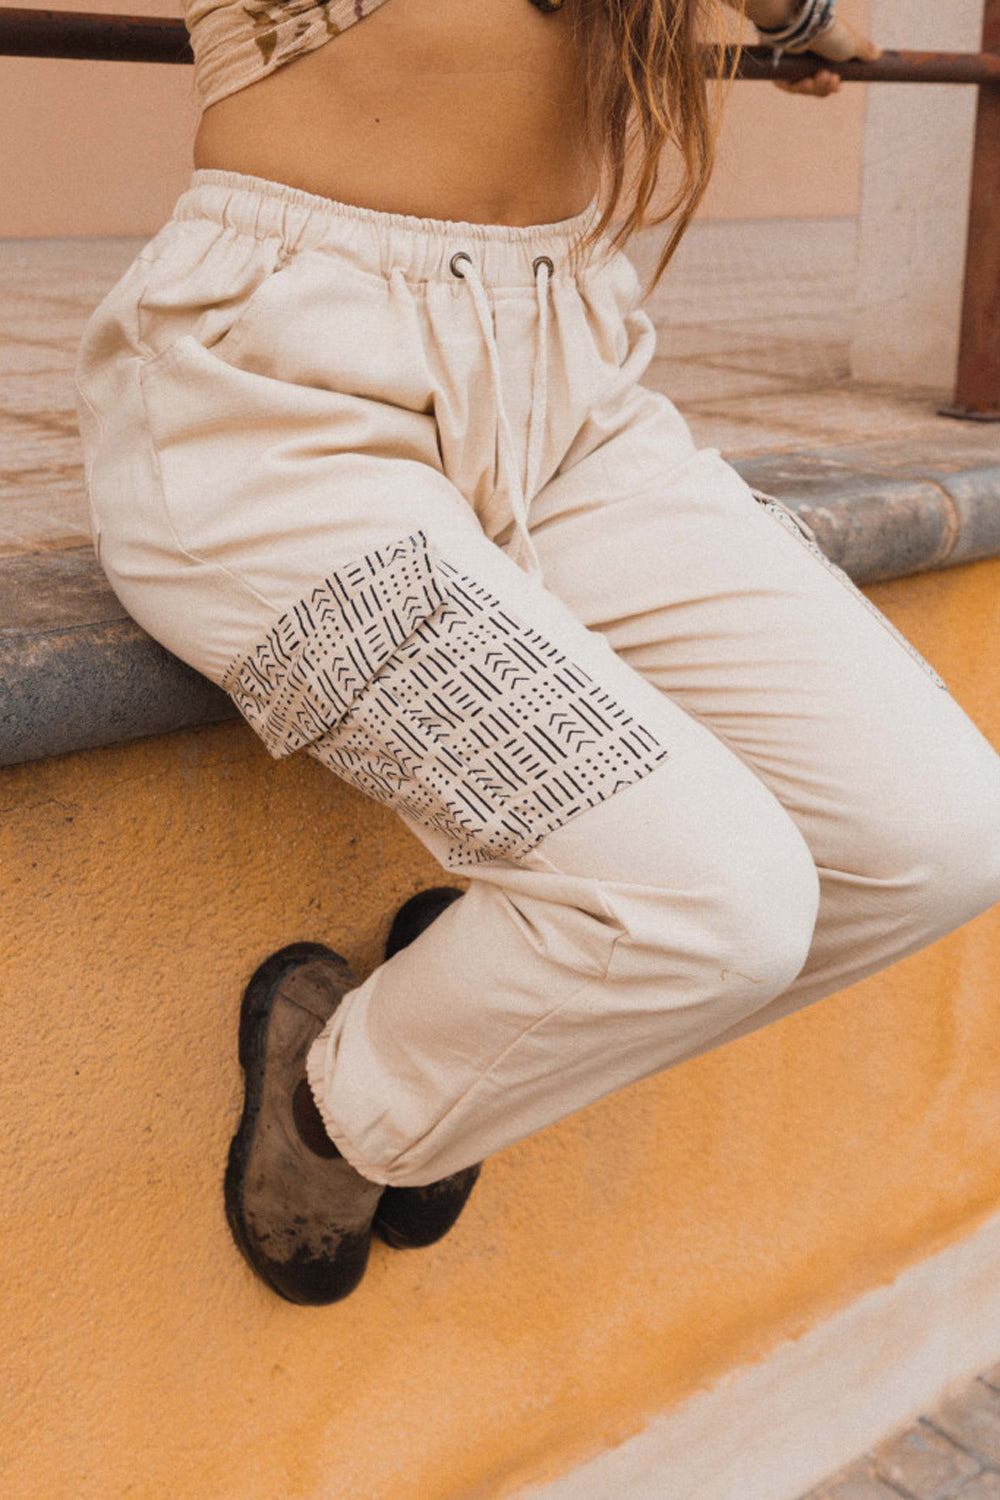 pantalón en algodón con dibujo étnico y bolsillos laterales con fantasía étnica